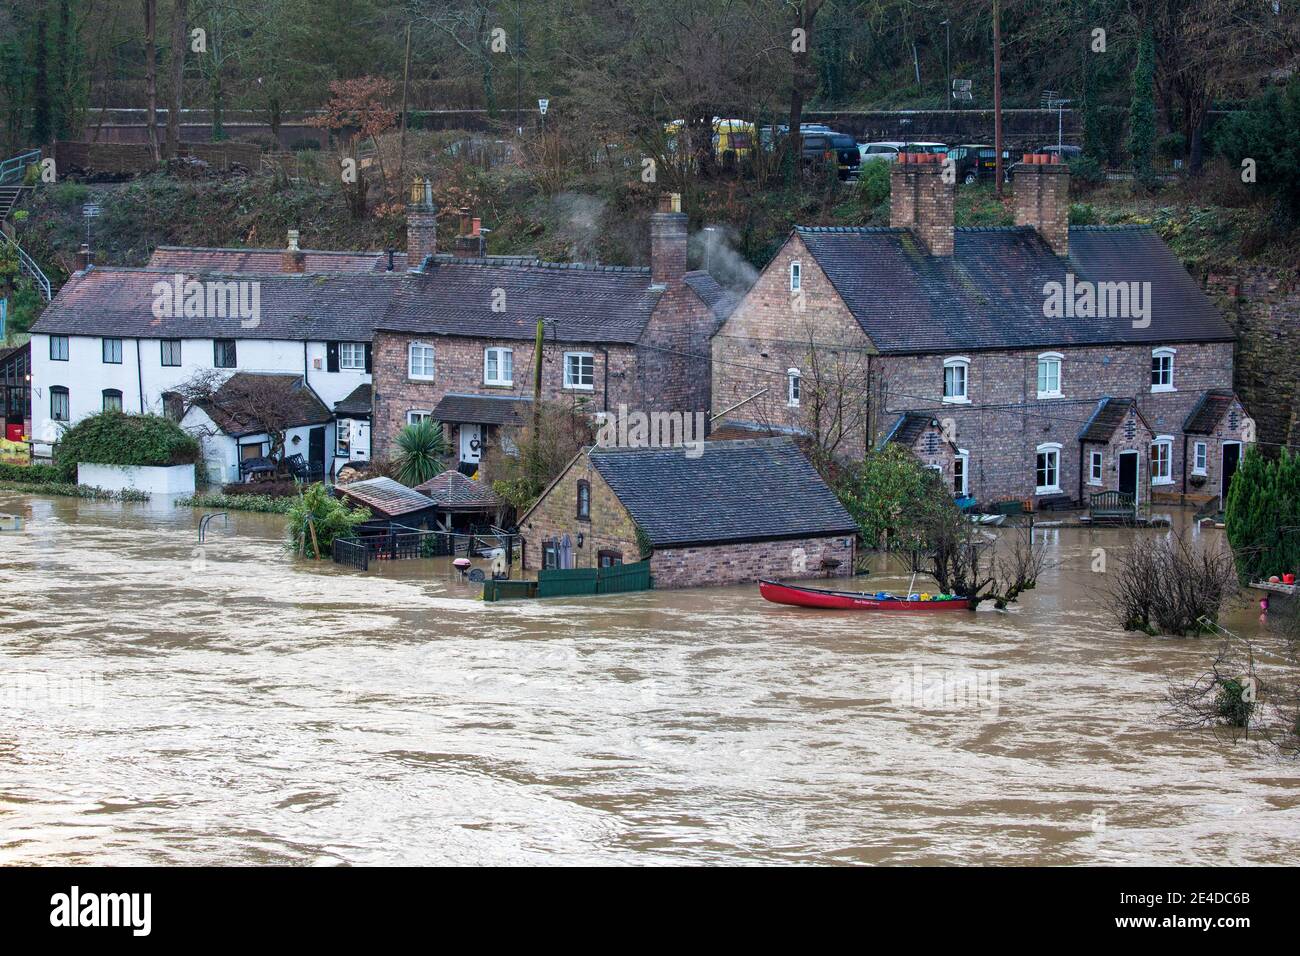 Shropshire, Regno Unito. 23 gennaio 2021. I livelli del fiume Severn nello Shropshire hanno continuato a salire durante la notte, causando gravi inondazioni in alcune aree. Le case sul lungofiume sono particolarmente vulnerabili alle inondazioni di questo periodo dell'anno. Credit: Rob carter/Alamy Live News Foto Stock